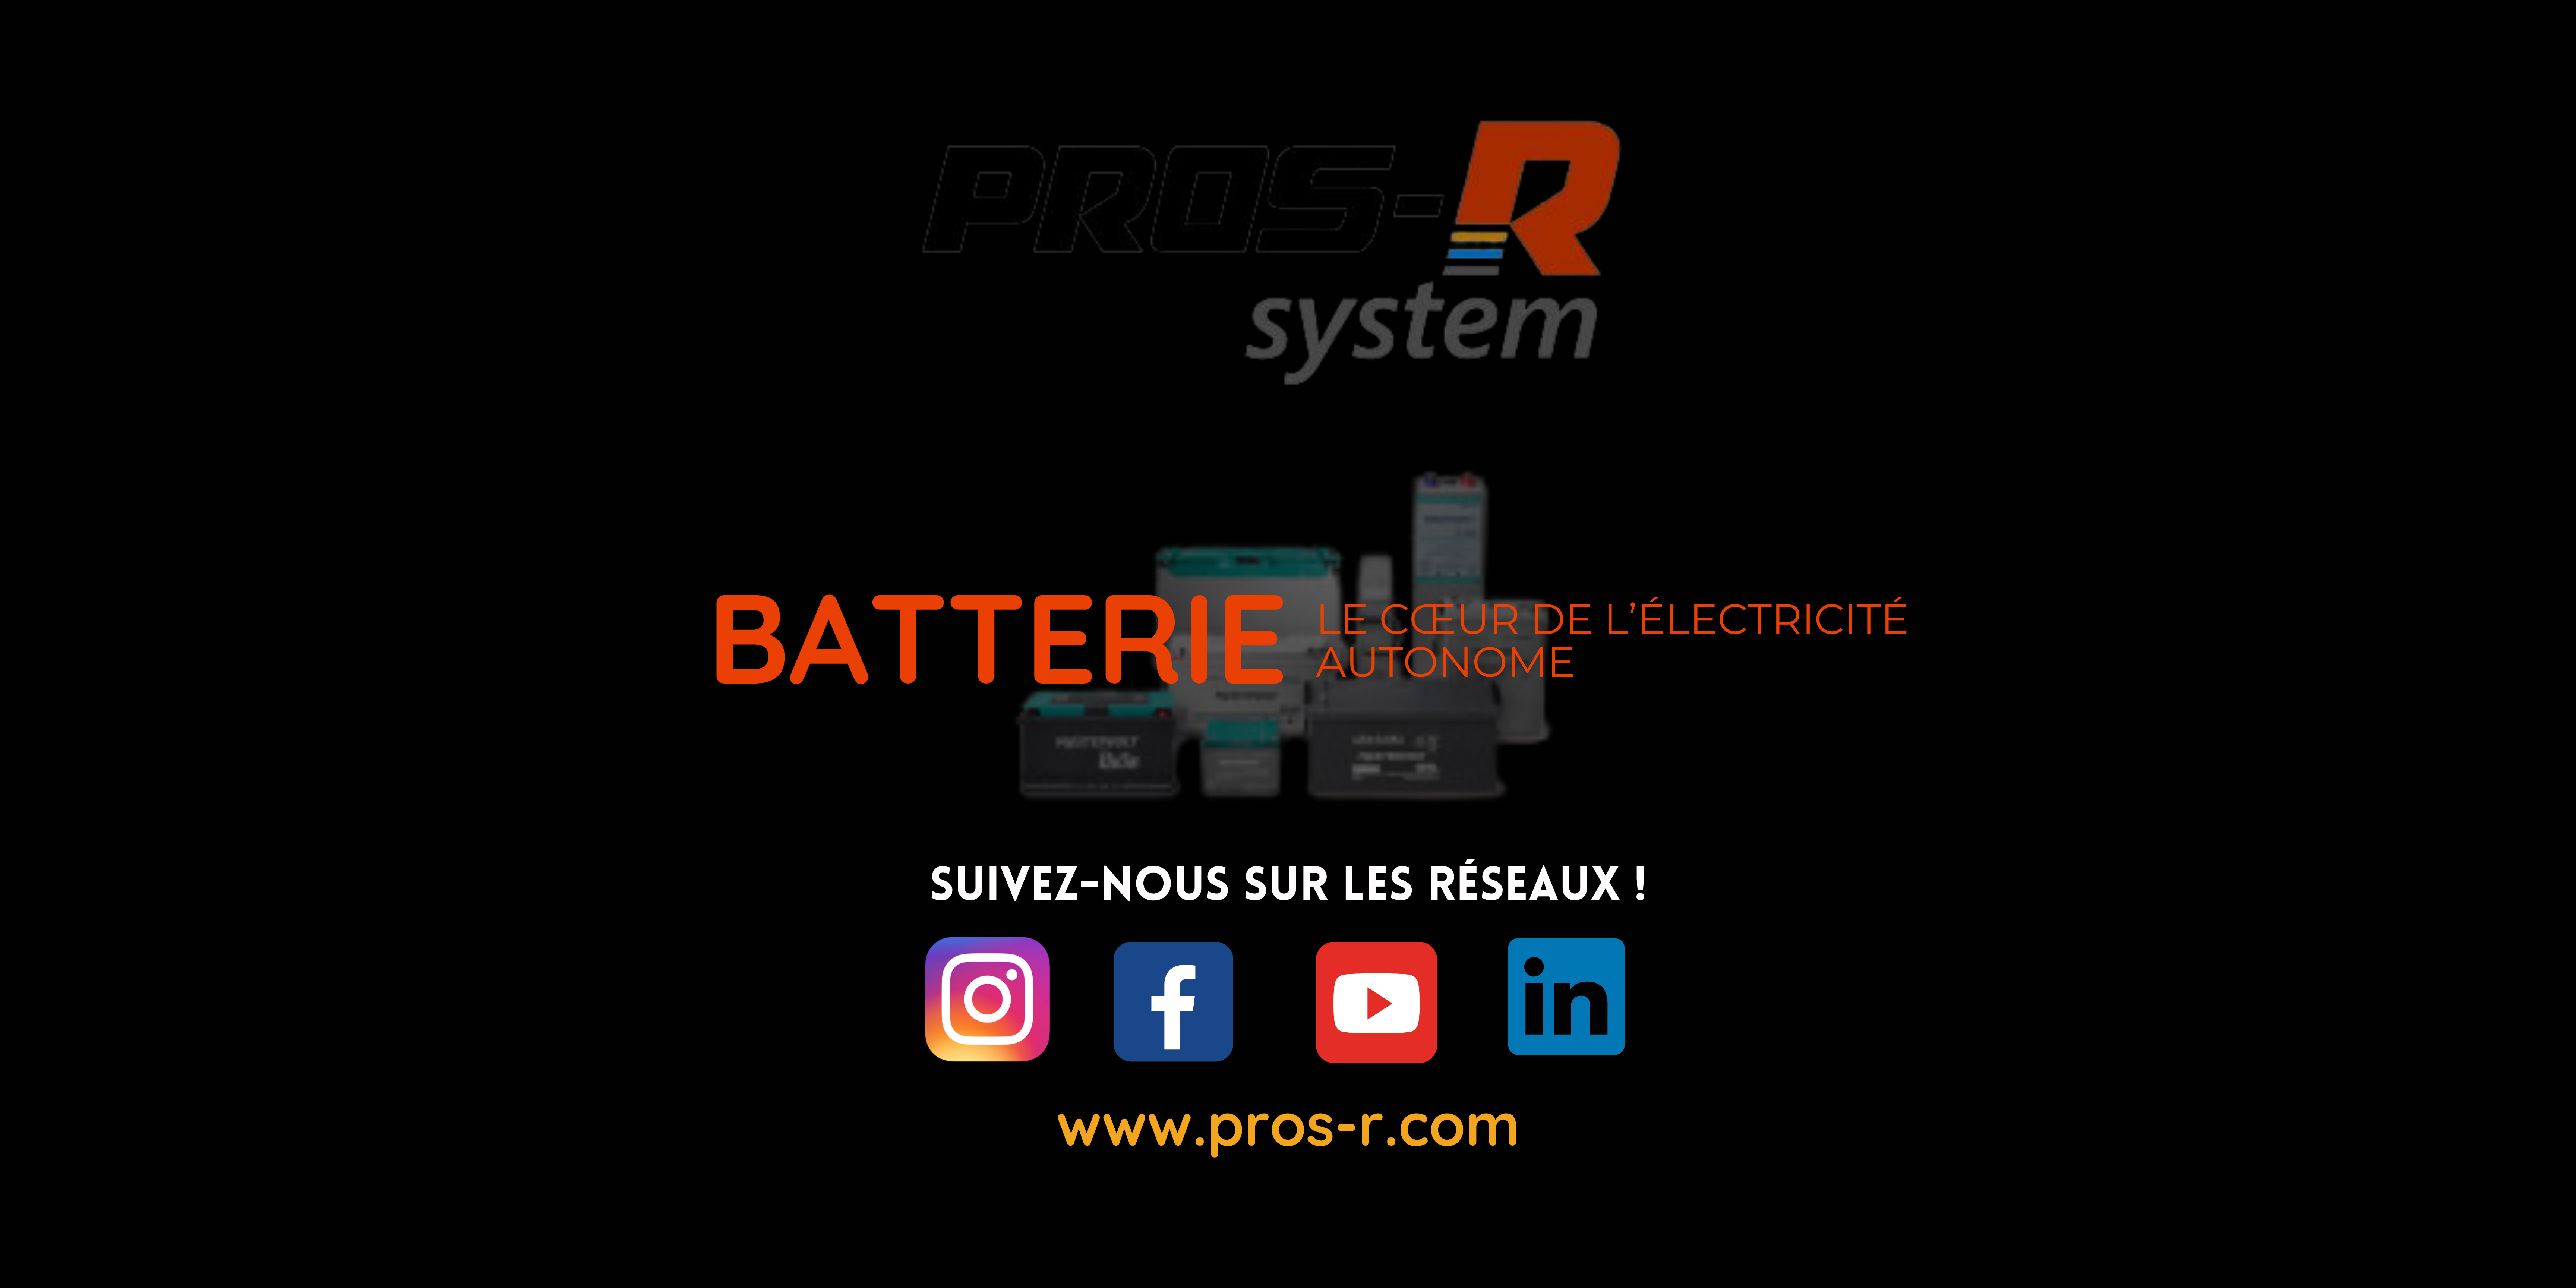 La batterie, le cœur de l’électricité autonome  PROS-R System